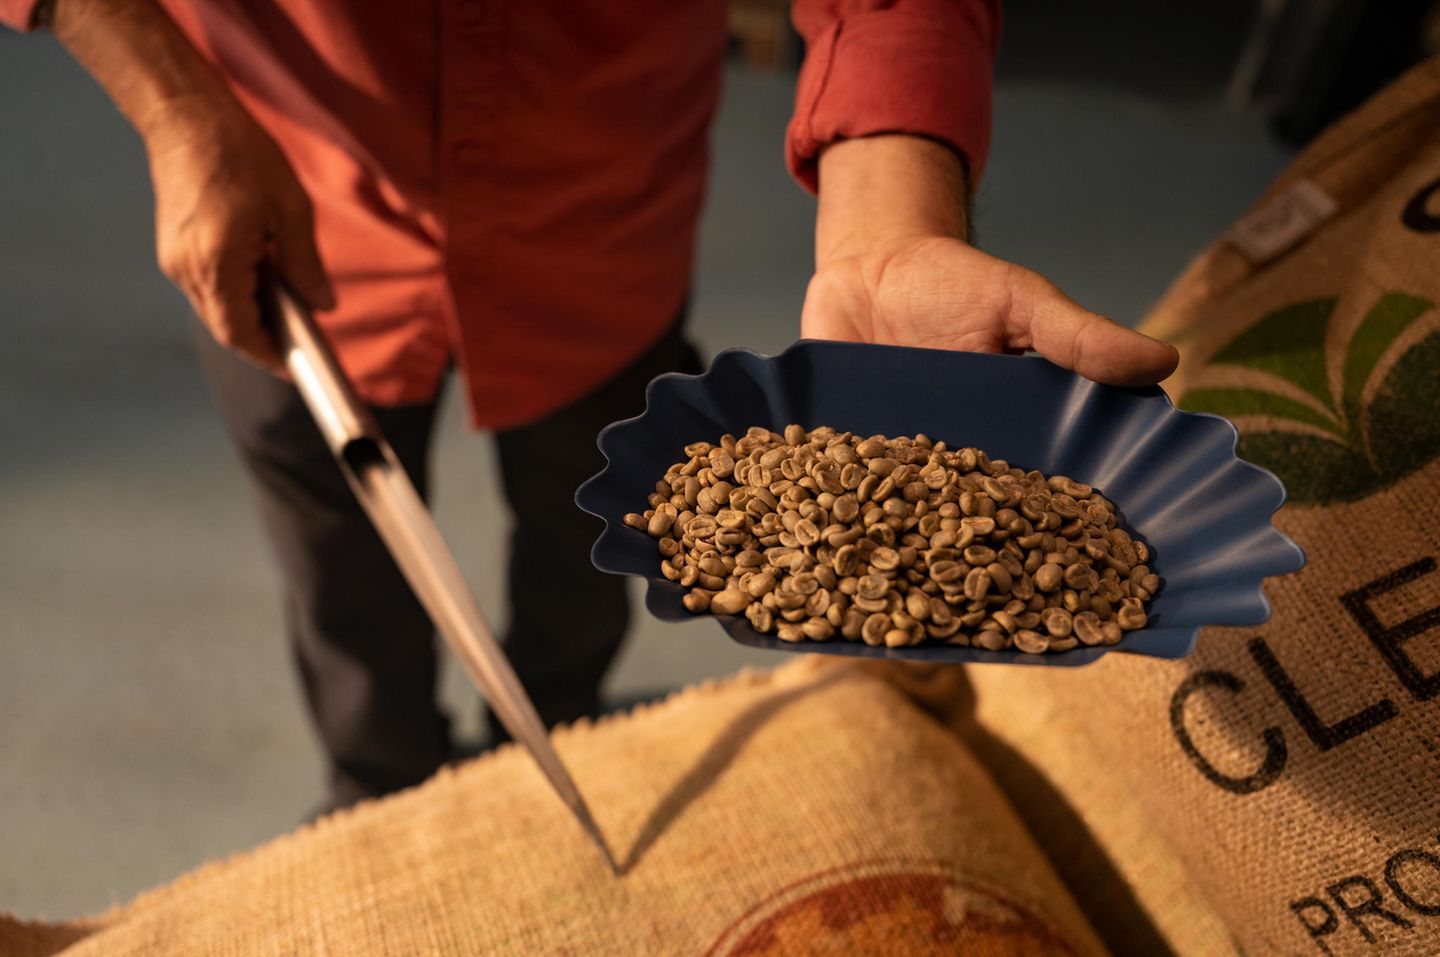 Gewinnspiel: Kaffeepaket der Melitta® Manufaktur im Wert von 200 € zu gewinnen